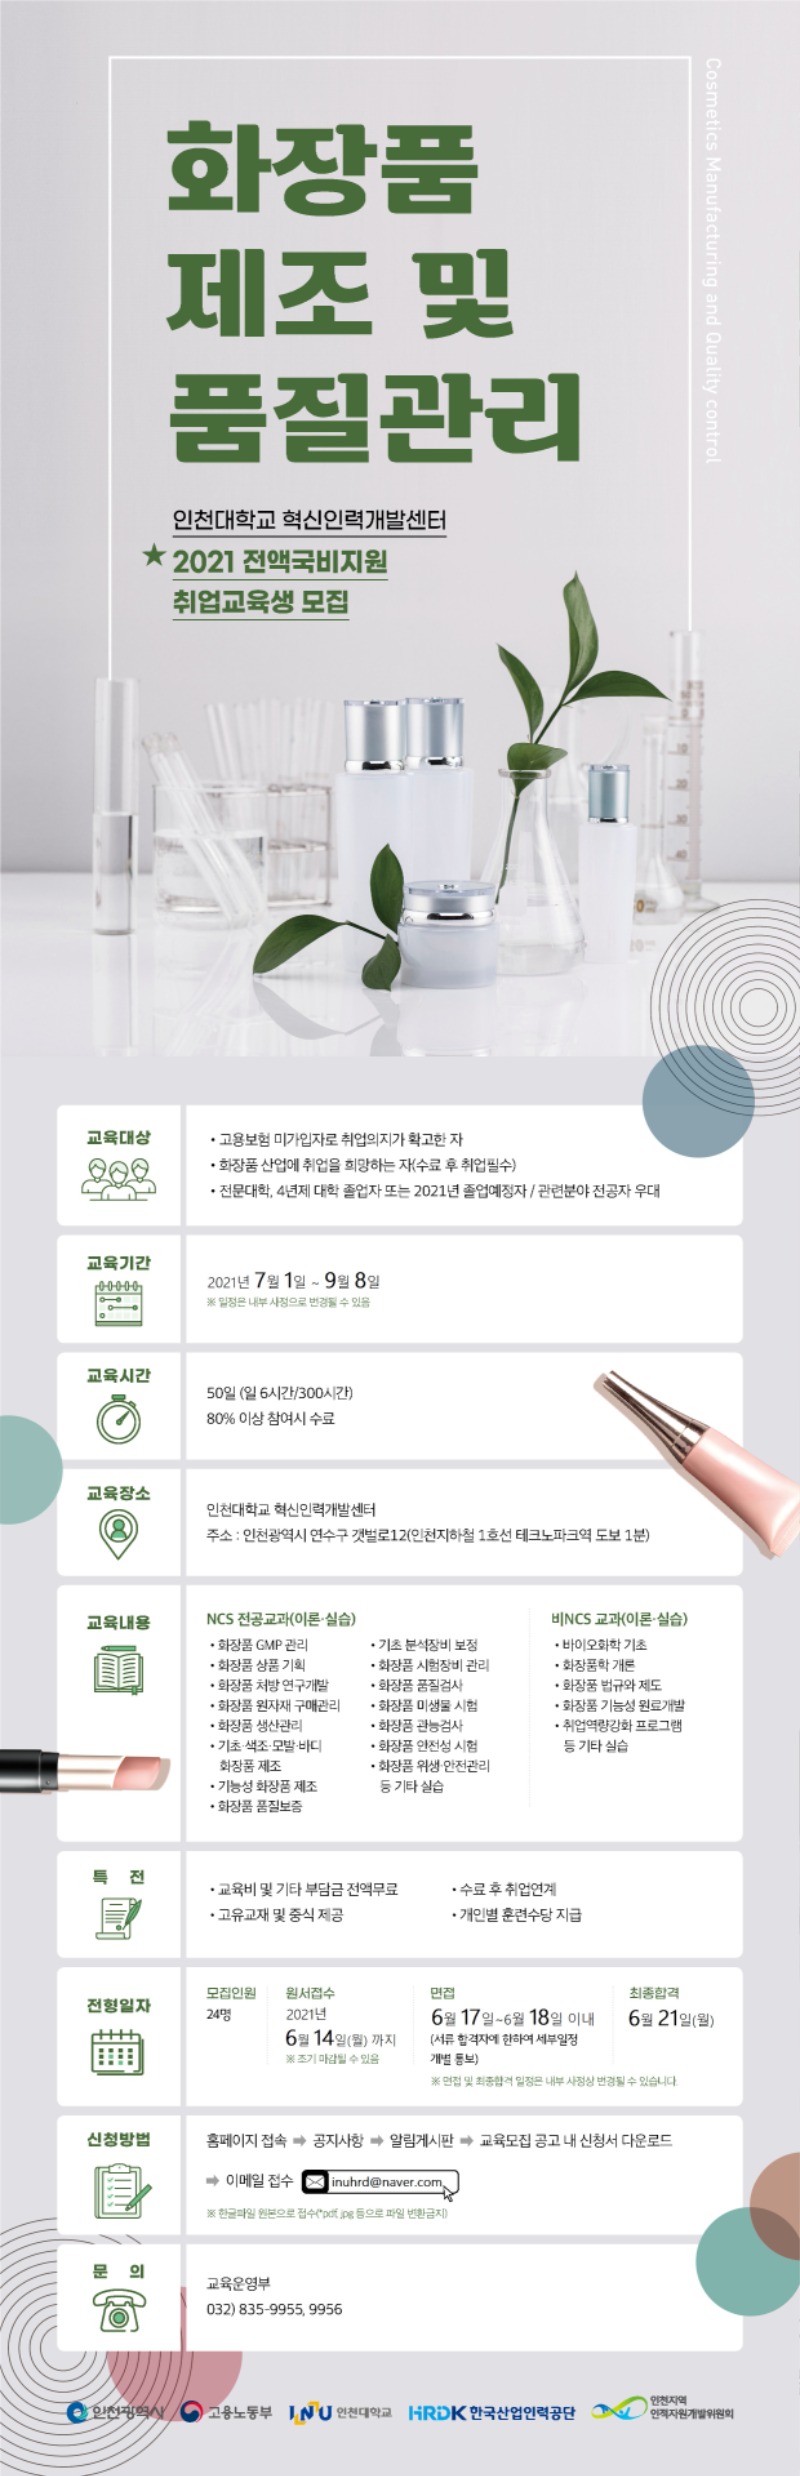 화장품 제조 및 품질관리_2차_웹용 포스터(1).jpg